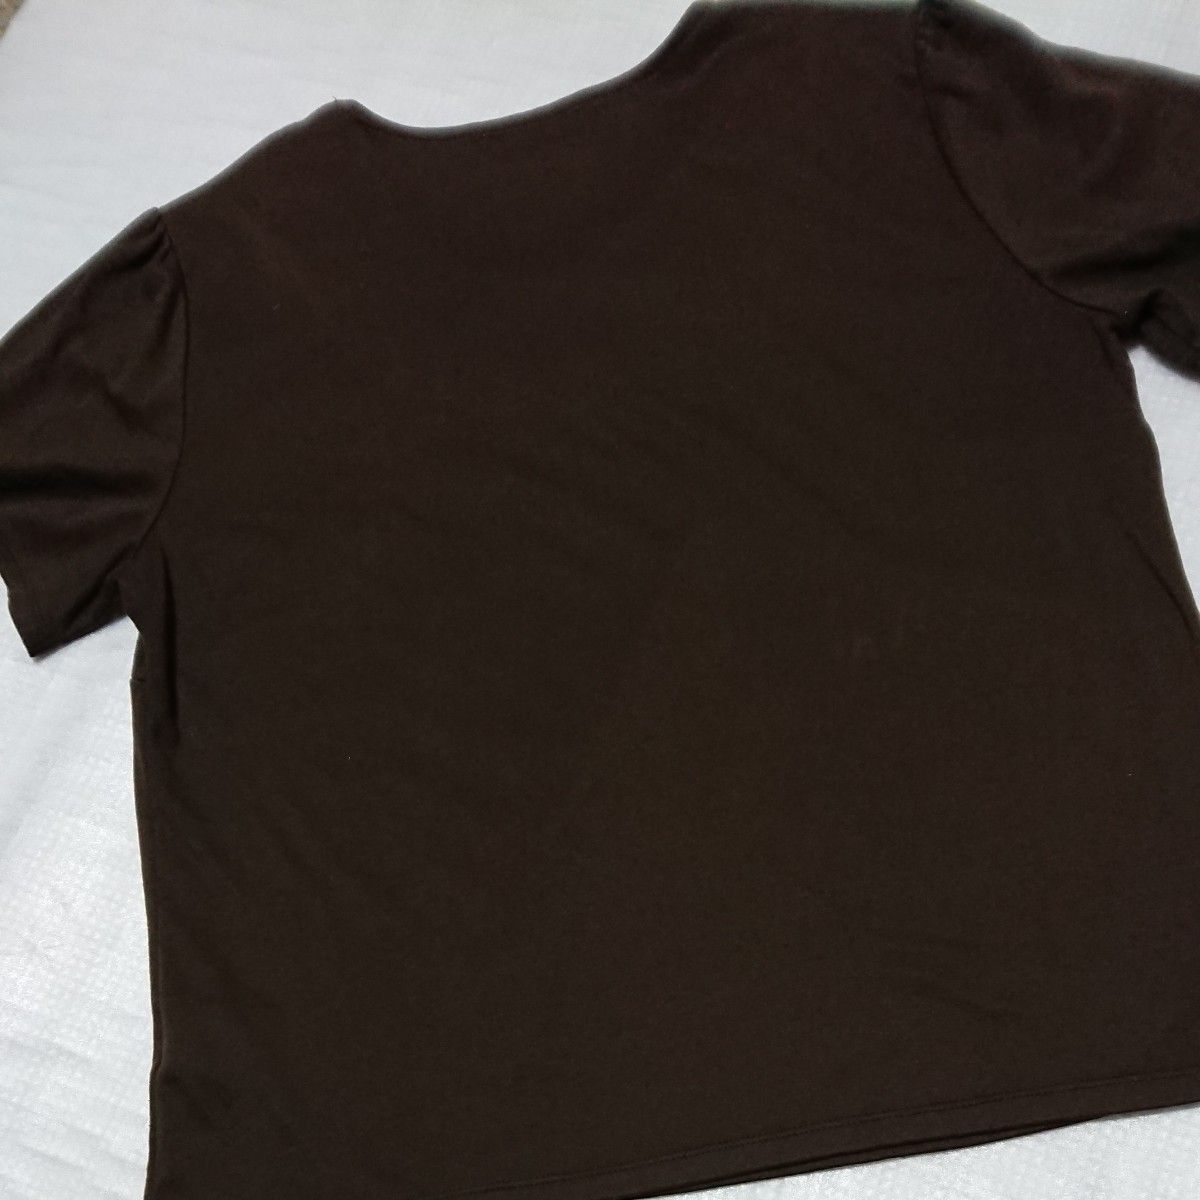 アリスバーリー 半袖トップス フリルカットソー ダークブラウン 焦げ茶色  半袖Tシャツ レディースLL ファッションクーポン